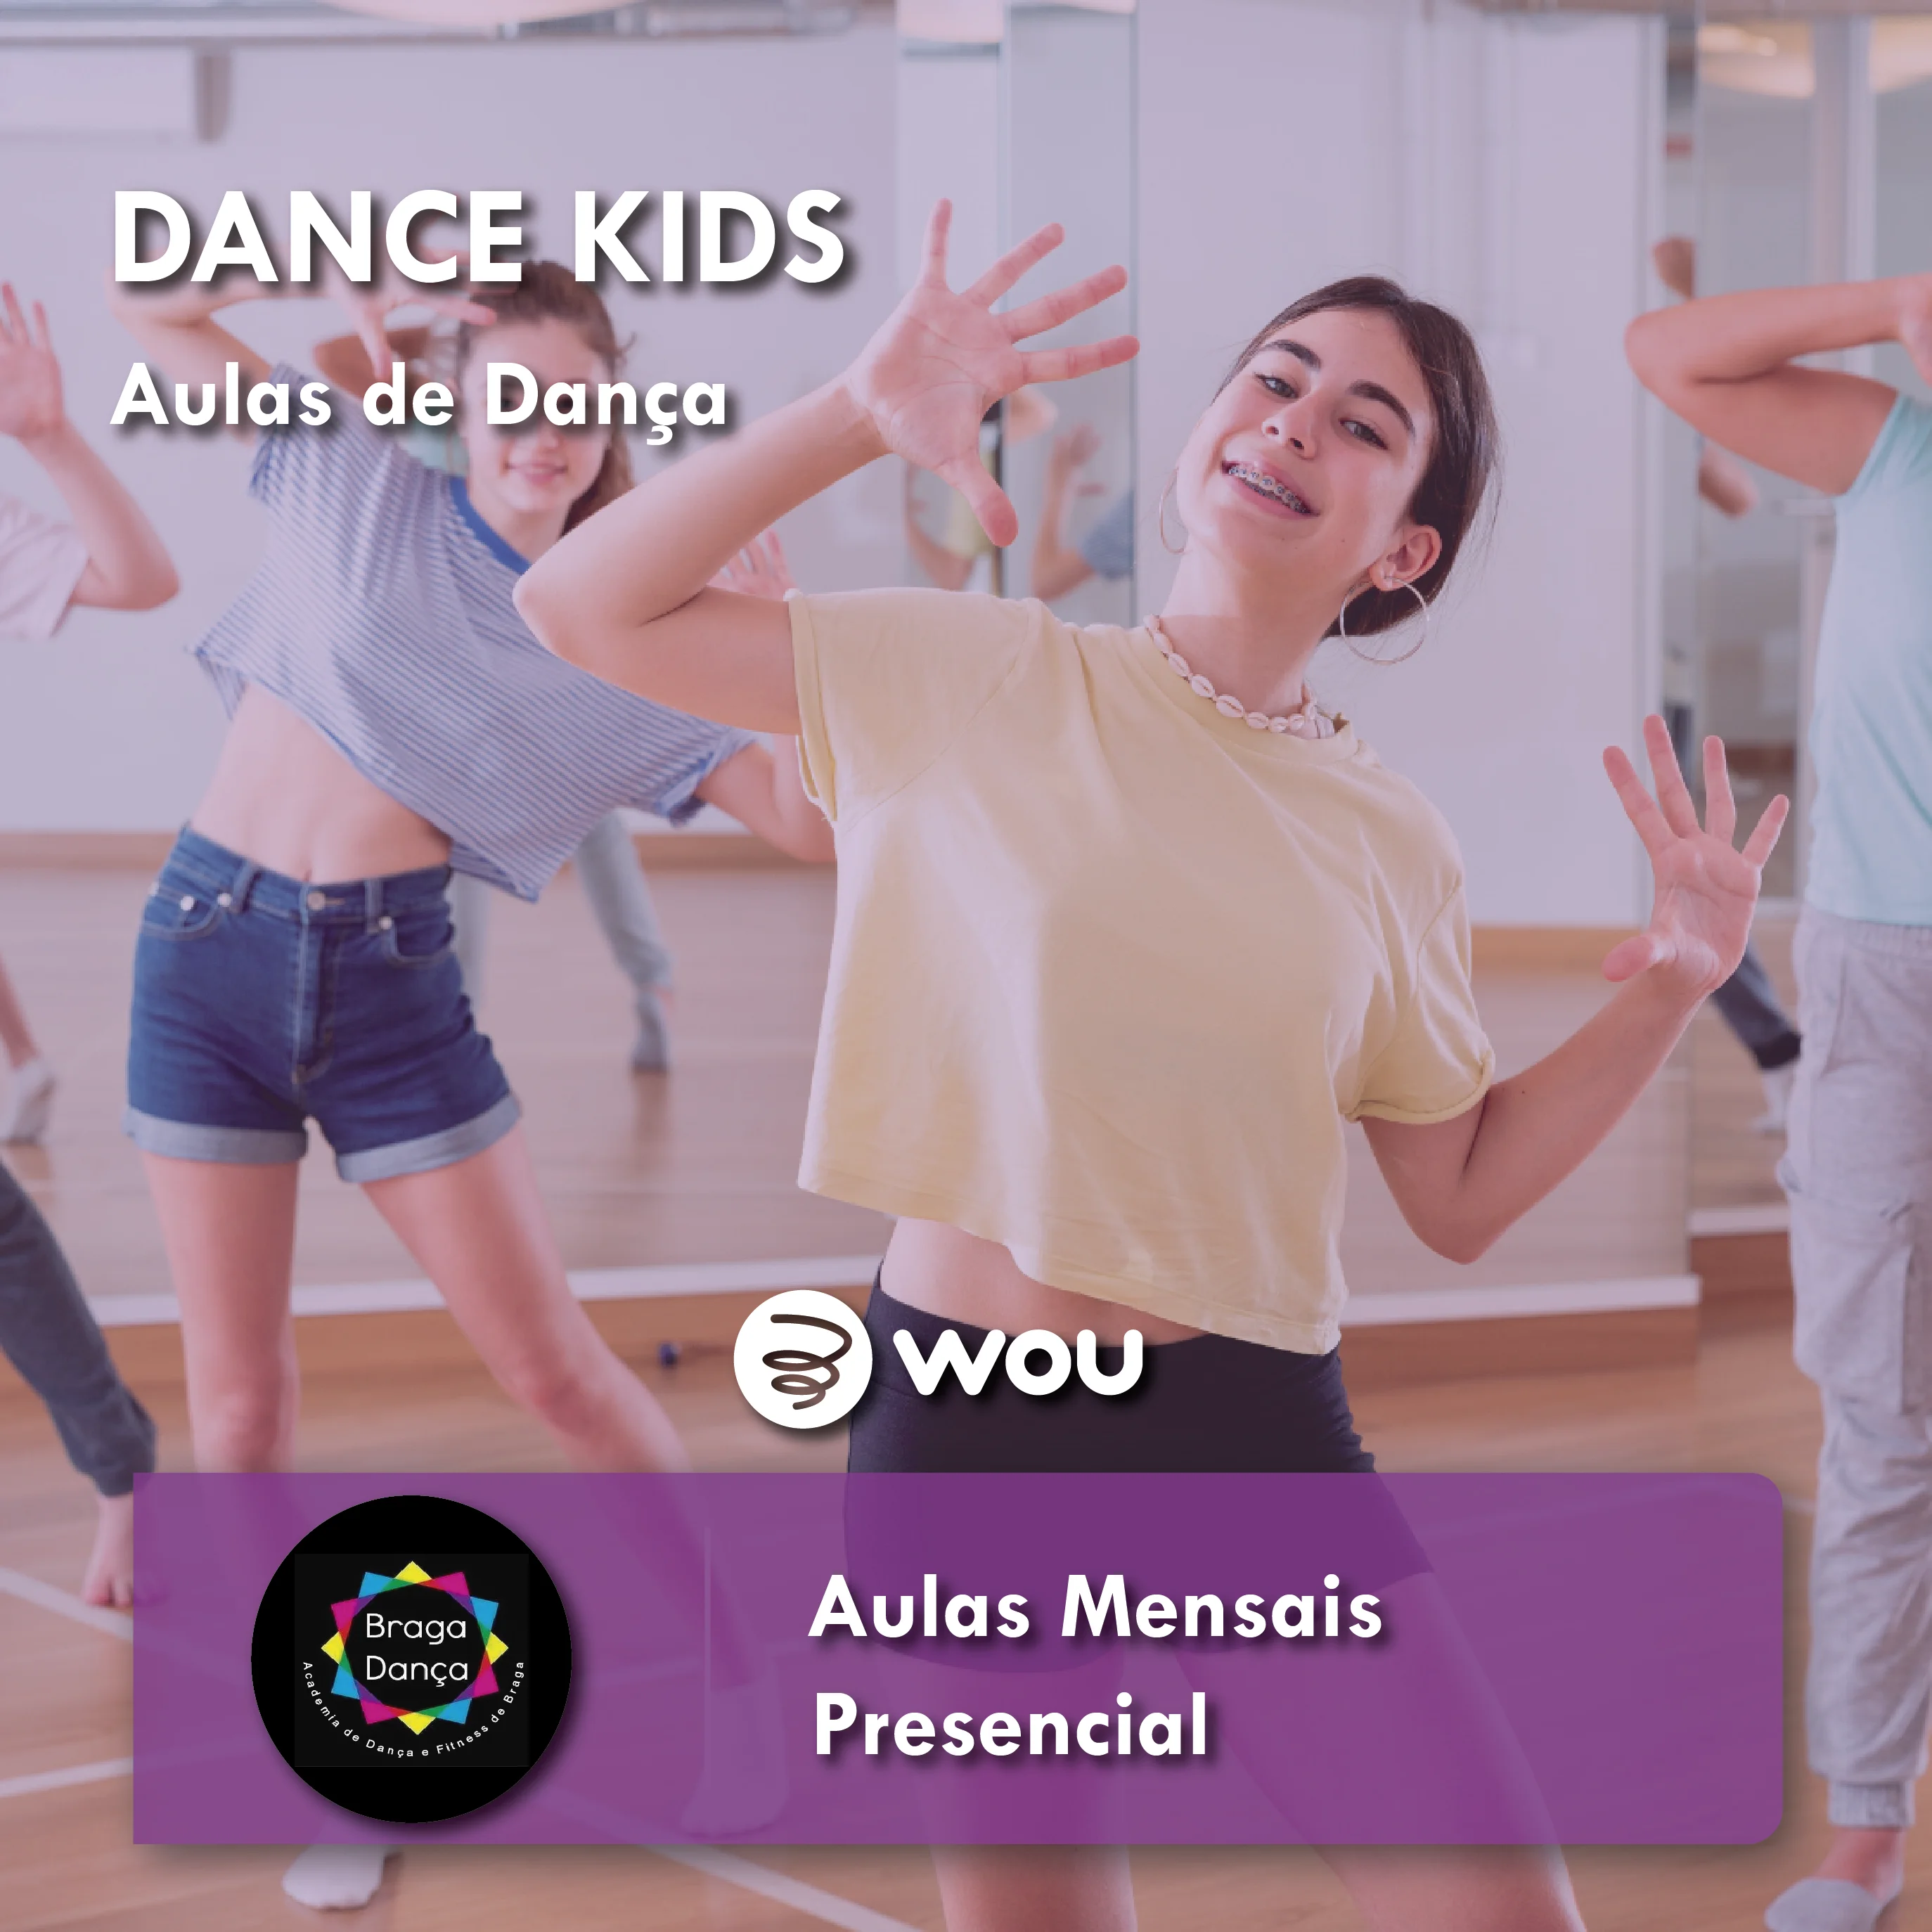 Dance Kids Classes in Braga